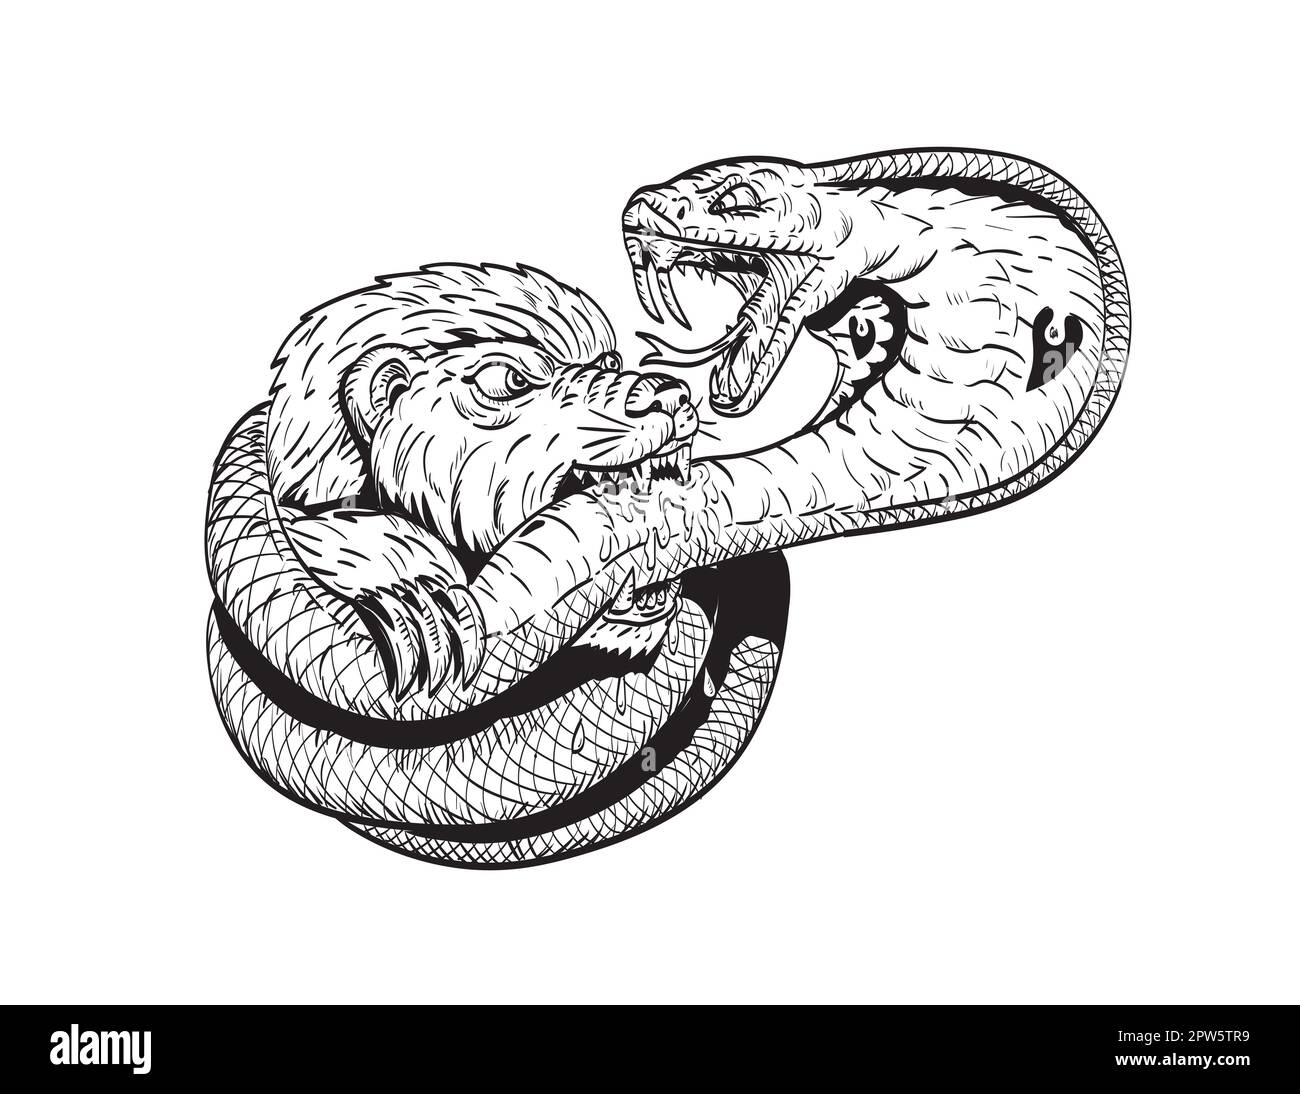 Comics-Zeichnung oder Illustration eines Honigdachs, der auf einem isolierten Hintergrund in Schwarz und Weiß im Retro-Stil gegen eine Königskobra kämpft. Stockfoto